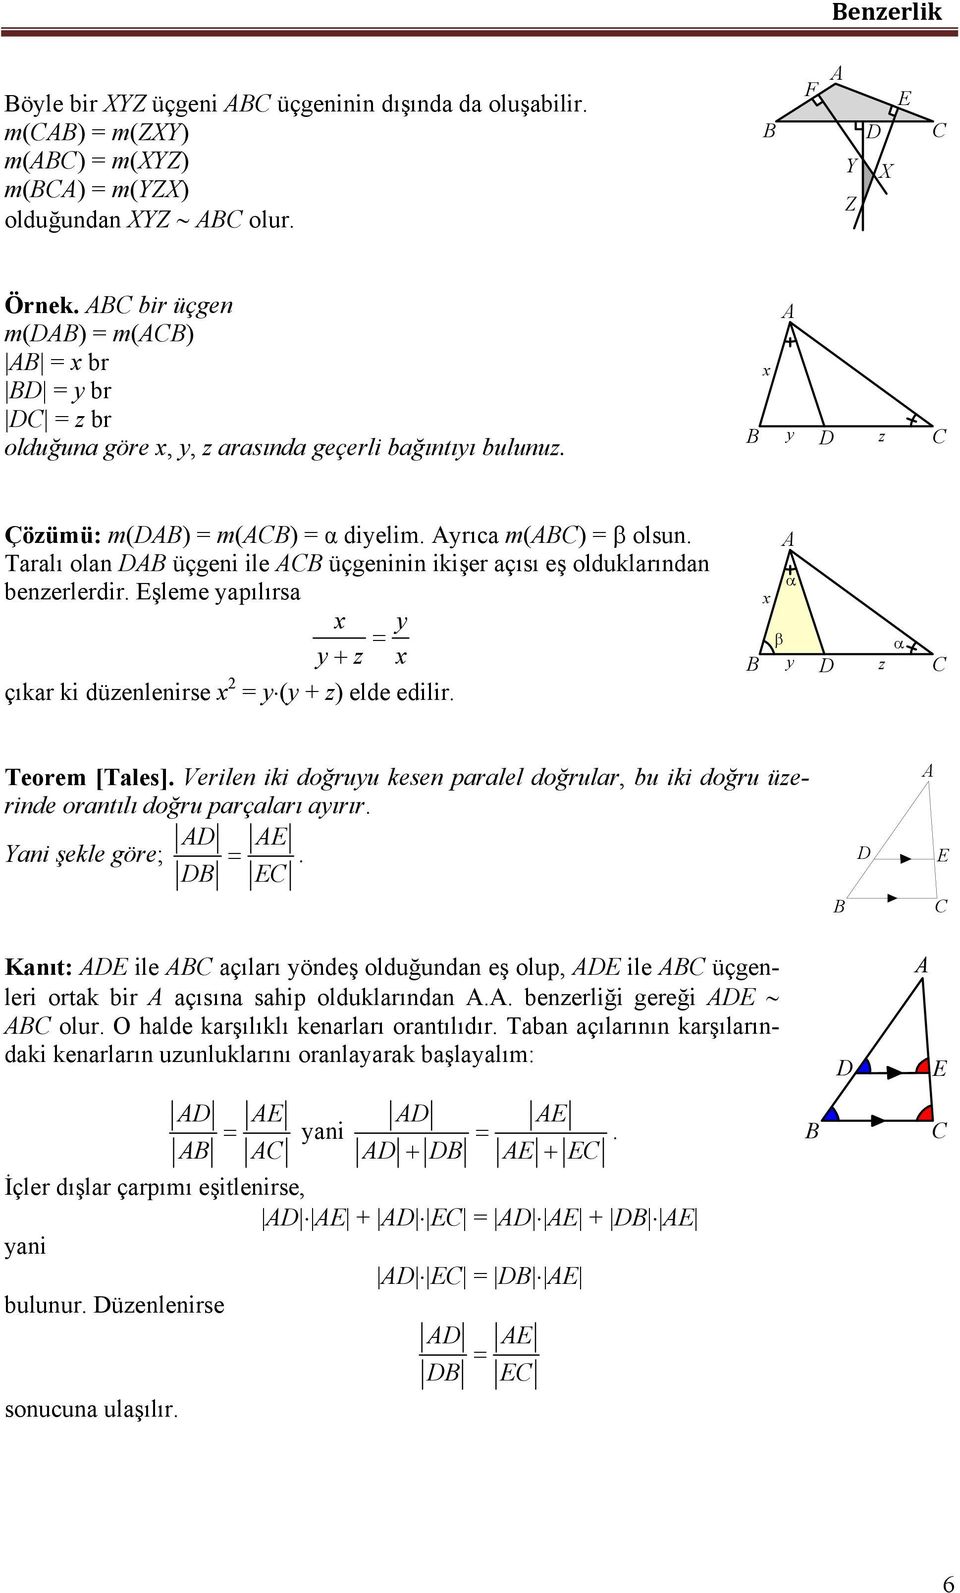 Trlı oln üçgeni ile üçgeninin ikişer çısı eş olduklrındn enzerlerdir. şleme ypılırs y y z çıkr ki düzenlenirse = y(y + z) elde edilir. y z Teorem [Tles].